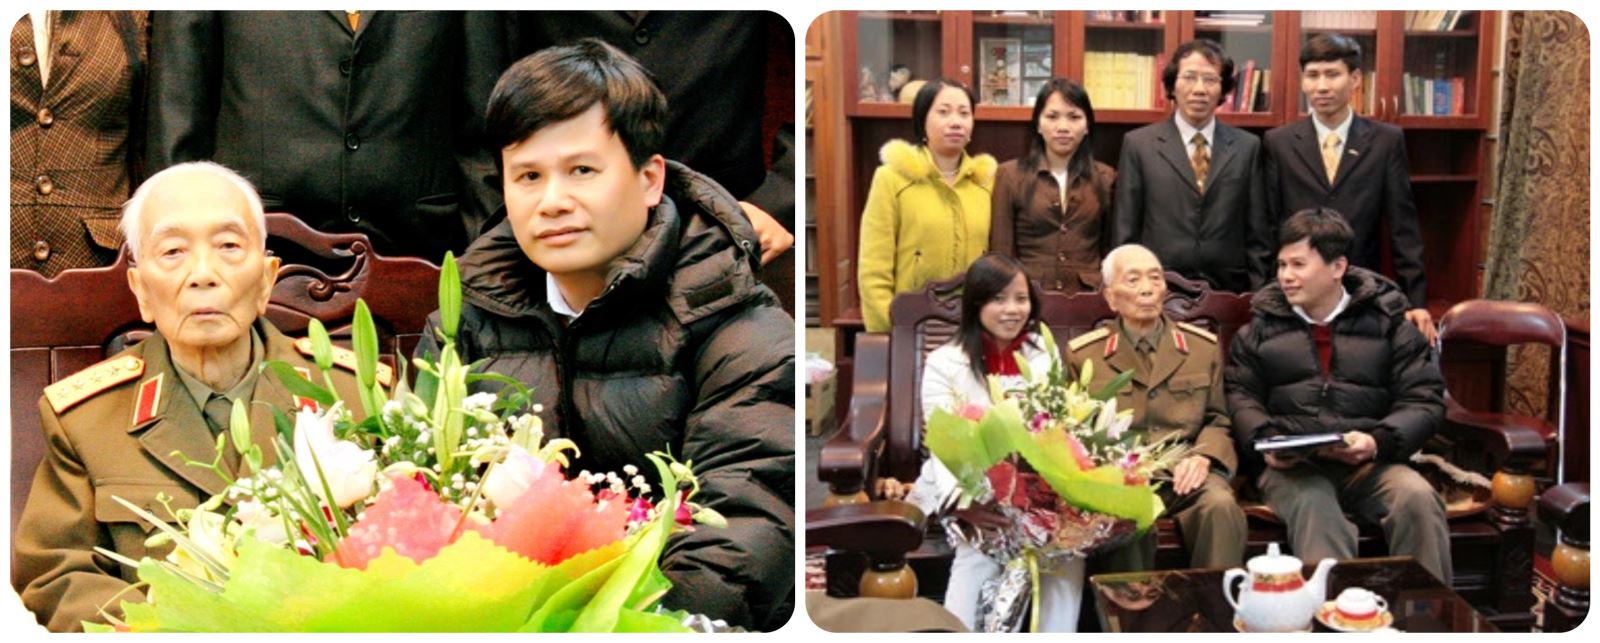 Ông Phạm Hồng Điệp - Chủ tịch Công ty Cổ phần Shinec cùng cán bộ trong một chuyến thăm Đại tướng Võ Nguyên Giáp (Ảnh: shinec.com.vn)